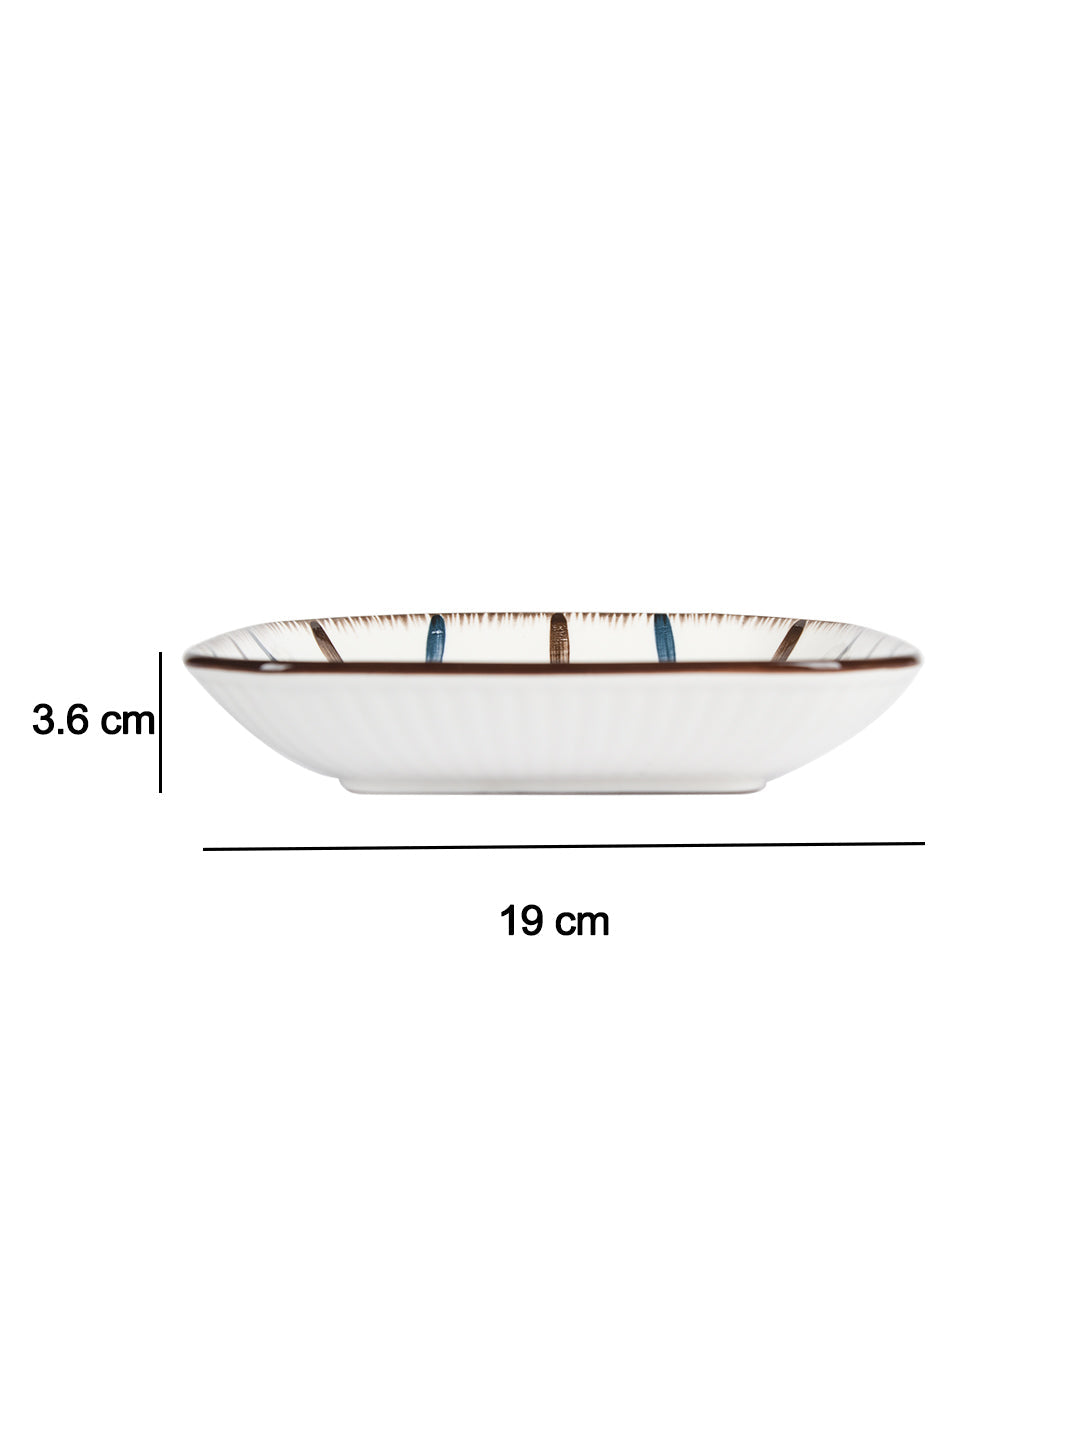 VON CASA Round Serveware Ceramic Dinner Plates - Off White